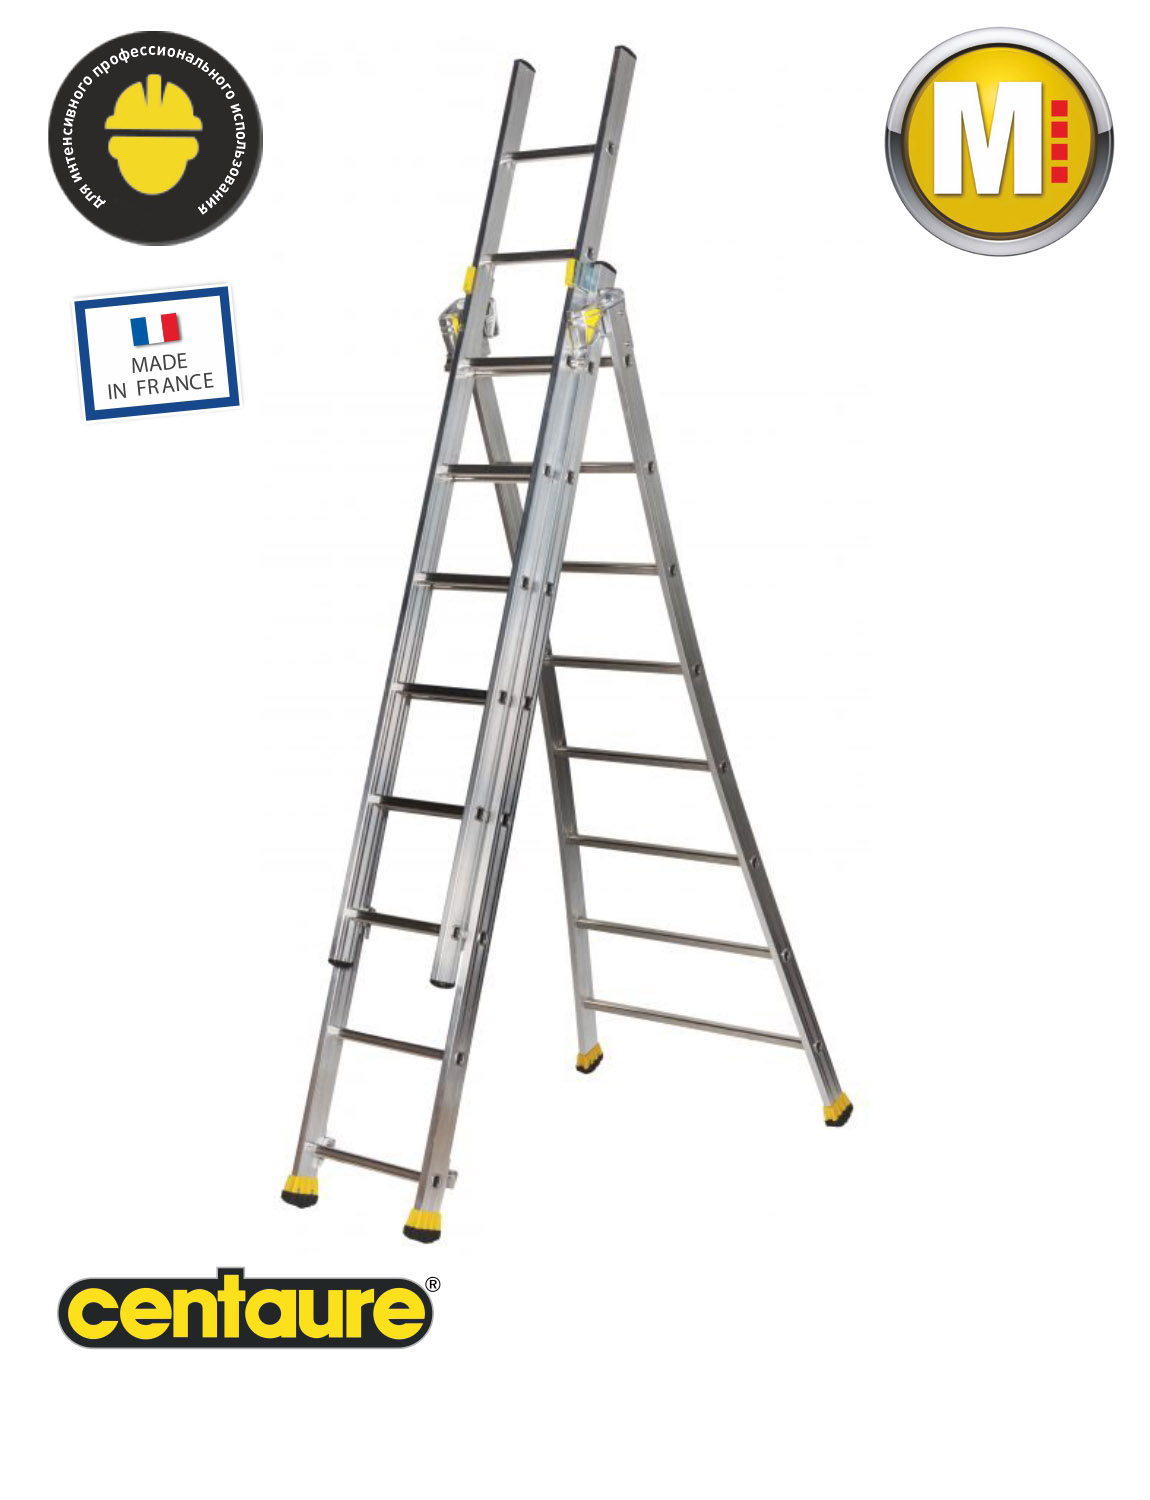 Аренда Centaure трехсекционной комбинированной лестницы профессиональной серии T3 3х8